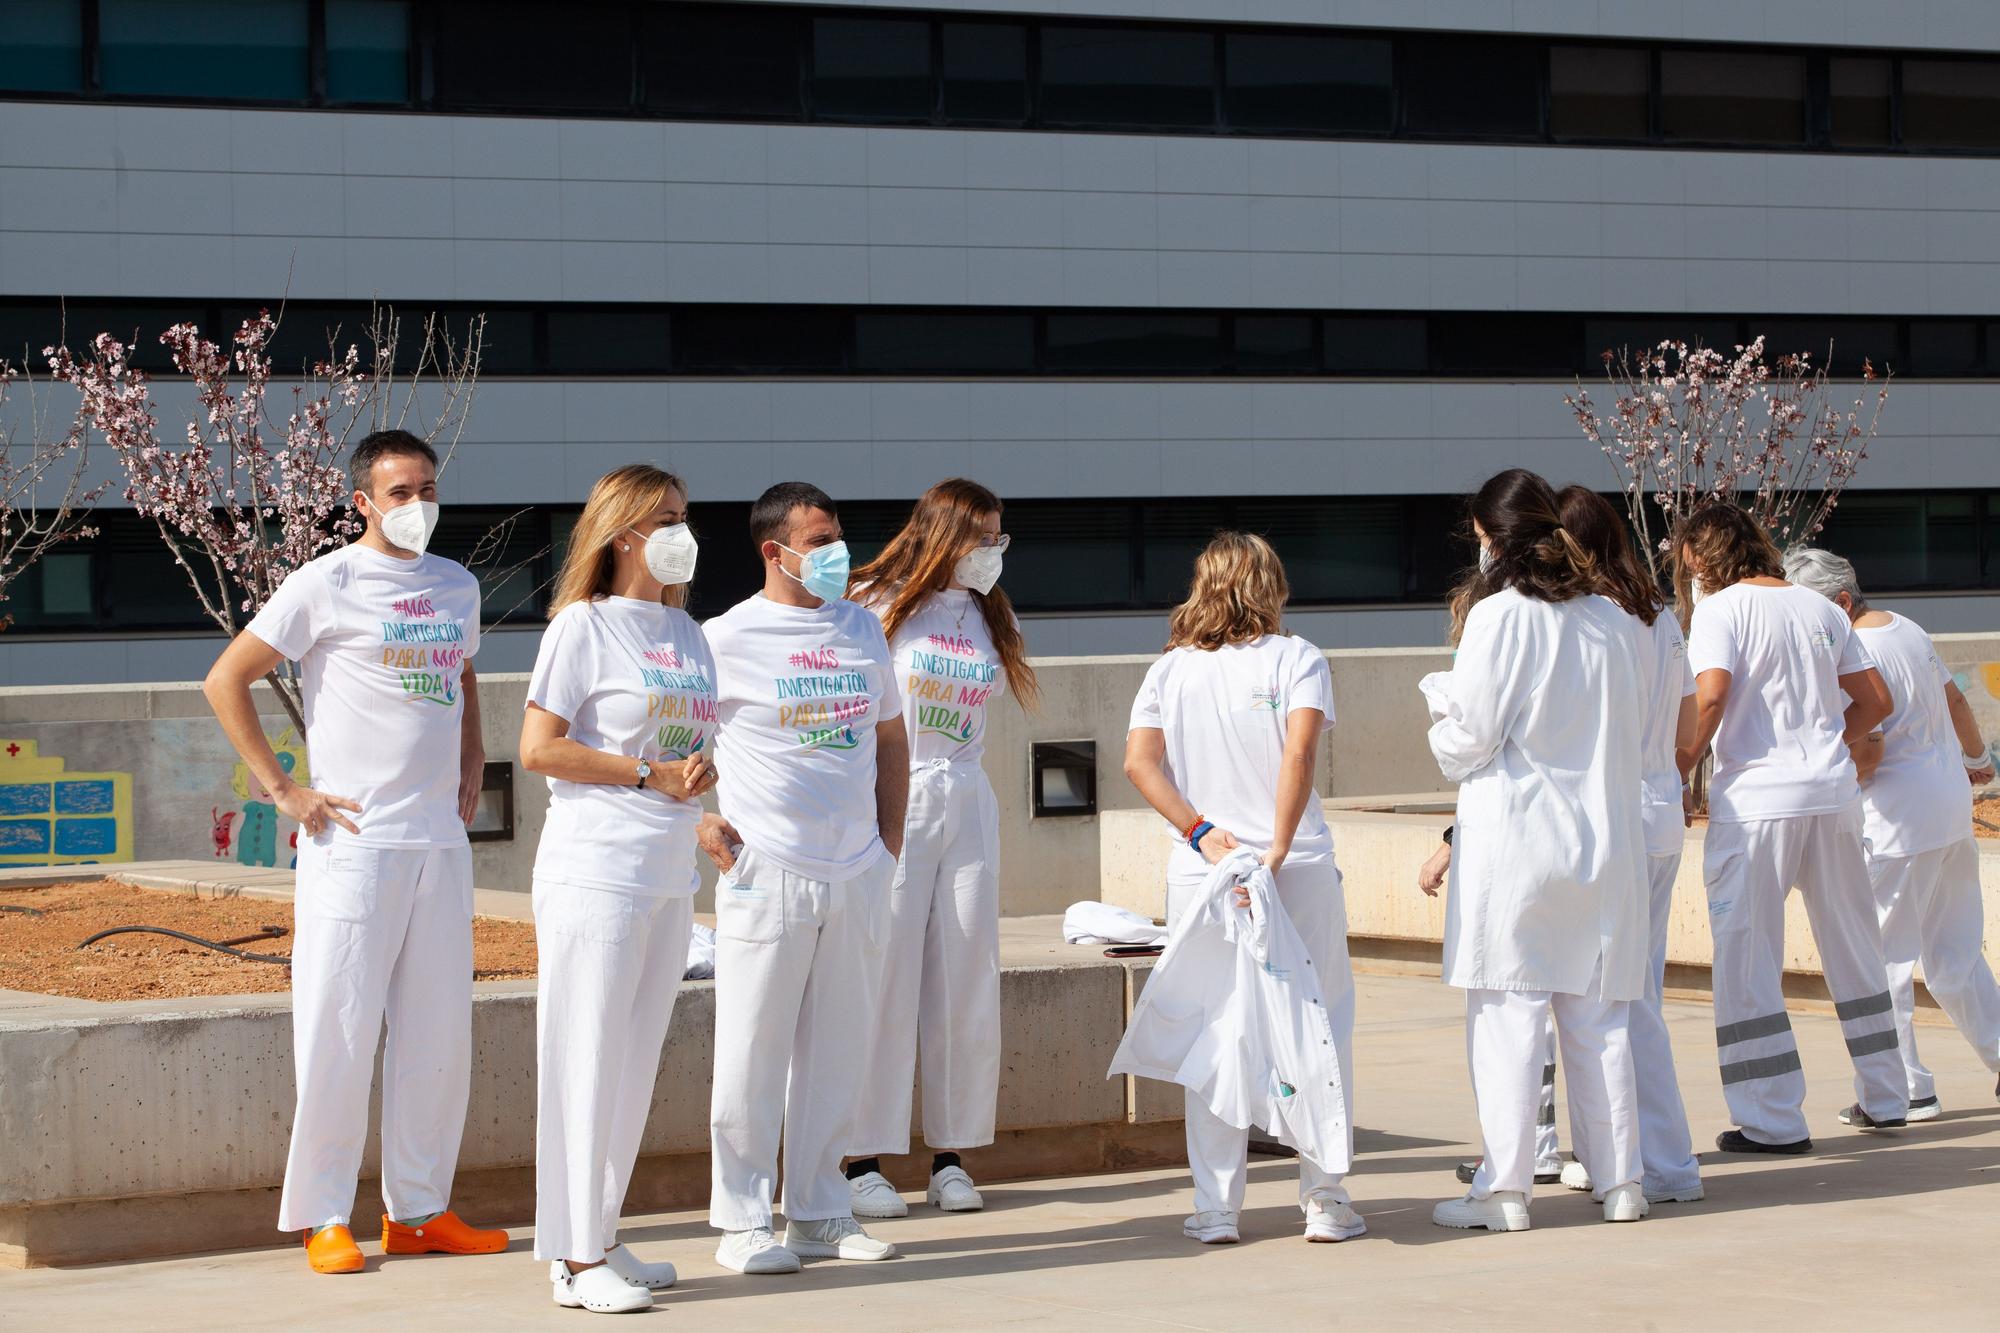 Personal del Hospital Can Misses, en Ibiza, baila la coreografía de 'El Hormiguero'